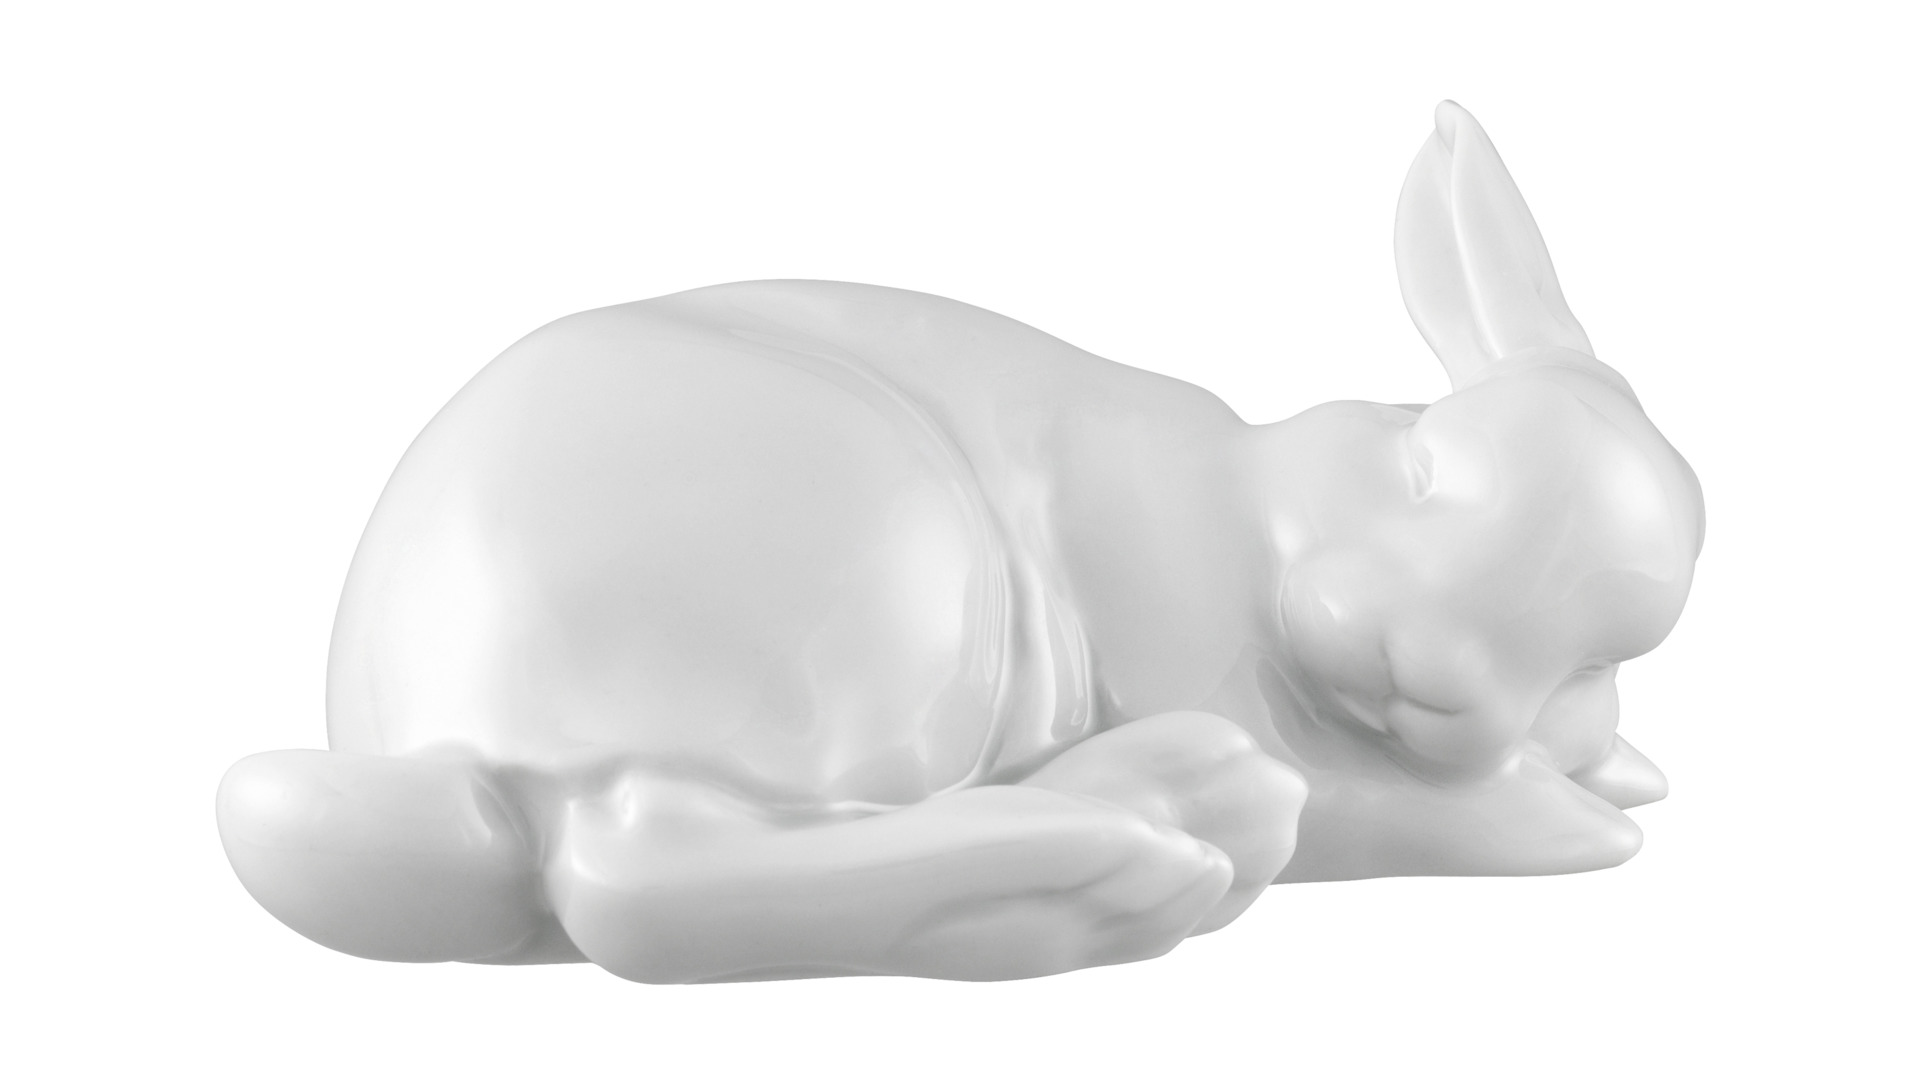 Фигурка Furstenberg Кролик Паулин 2020 10х7,5см, белая